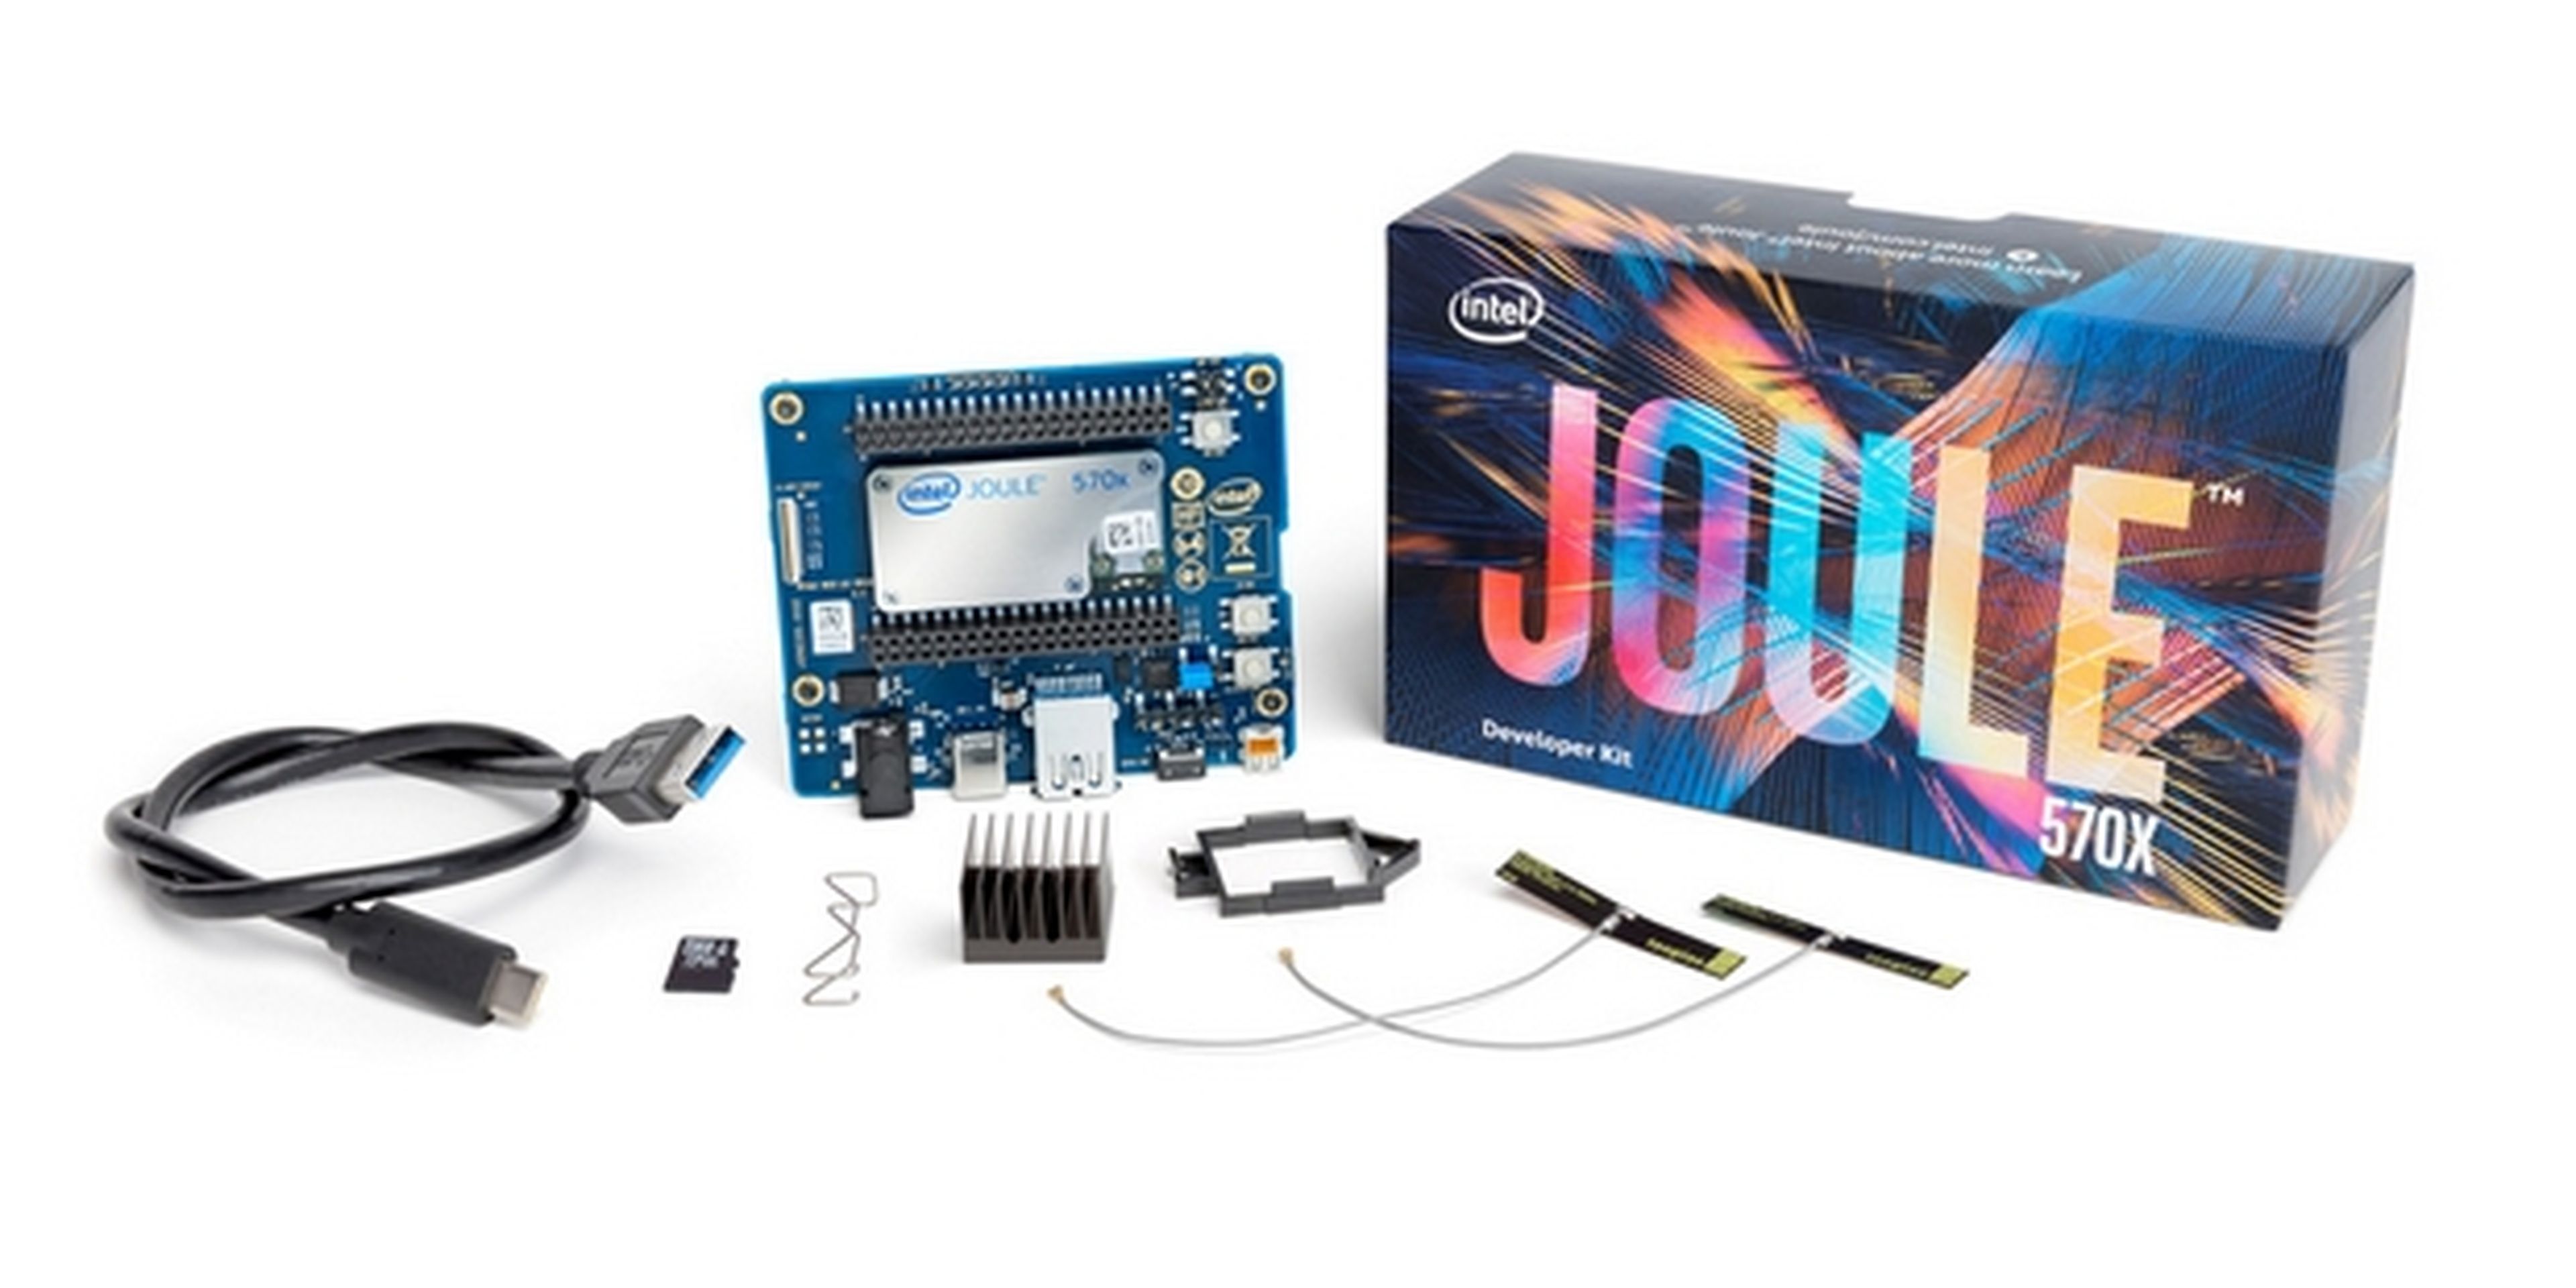 Intel Joule, el microordenador que se merienda a Raspberry Pi